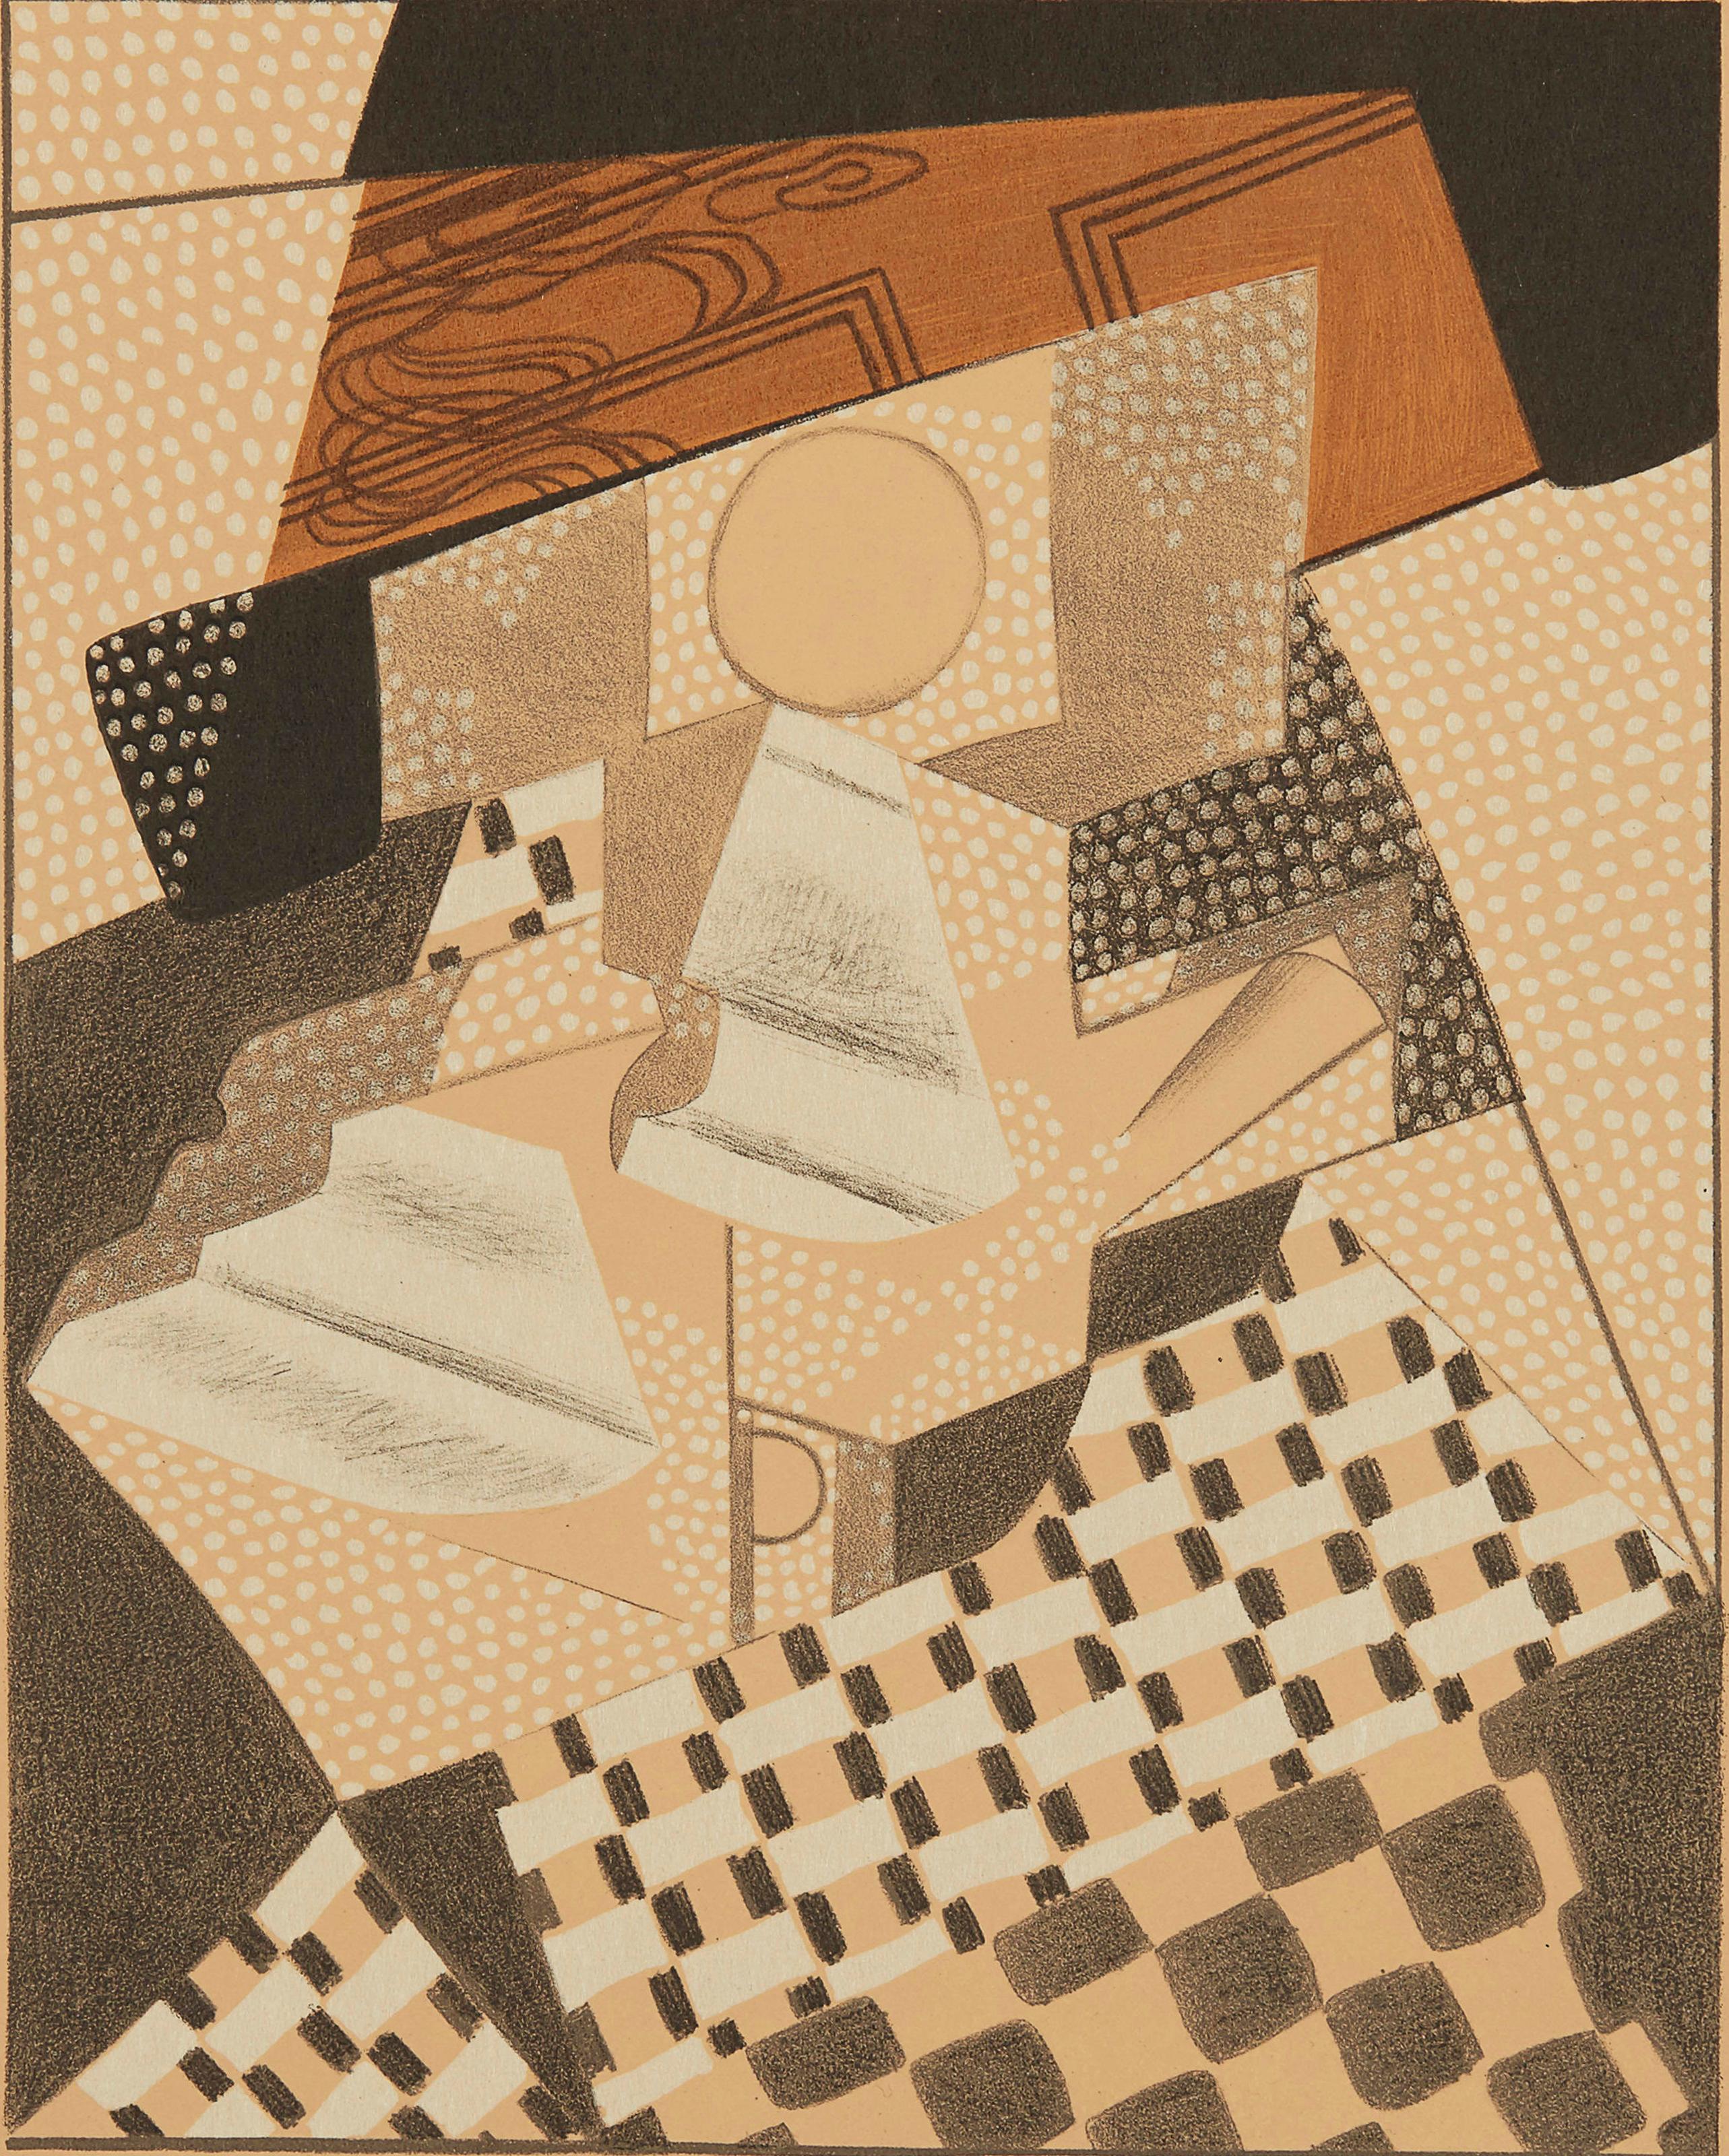 Gris, Loupière (Kahnweiler 1969), Au Soleil du Plafond (after) - Print by Juan Gris